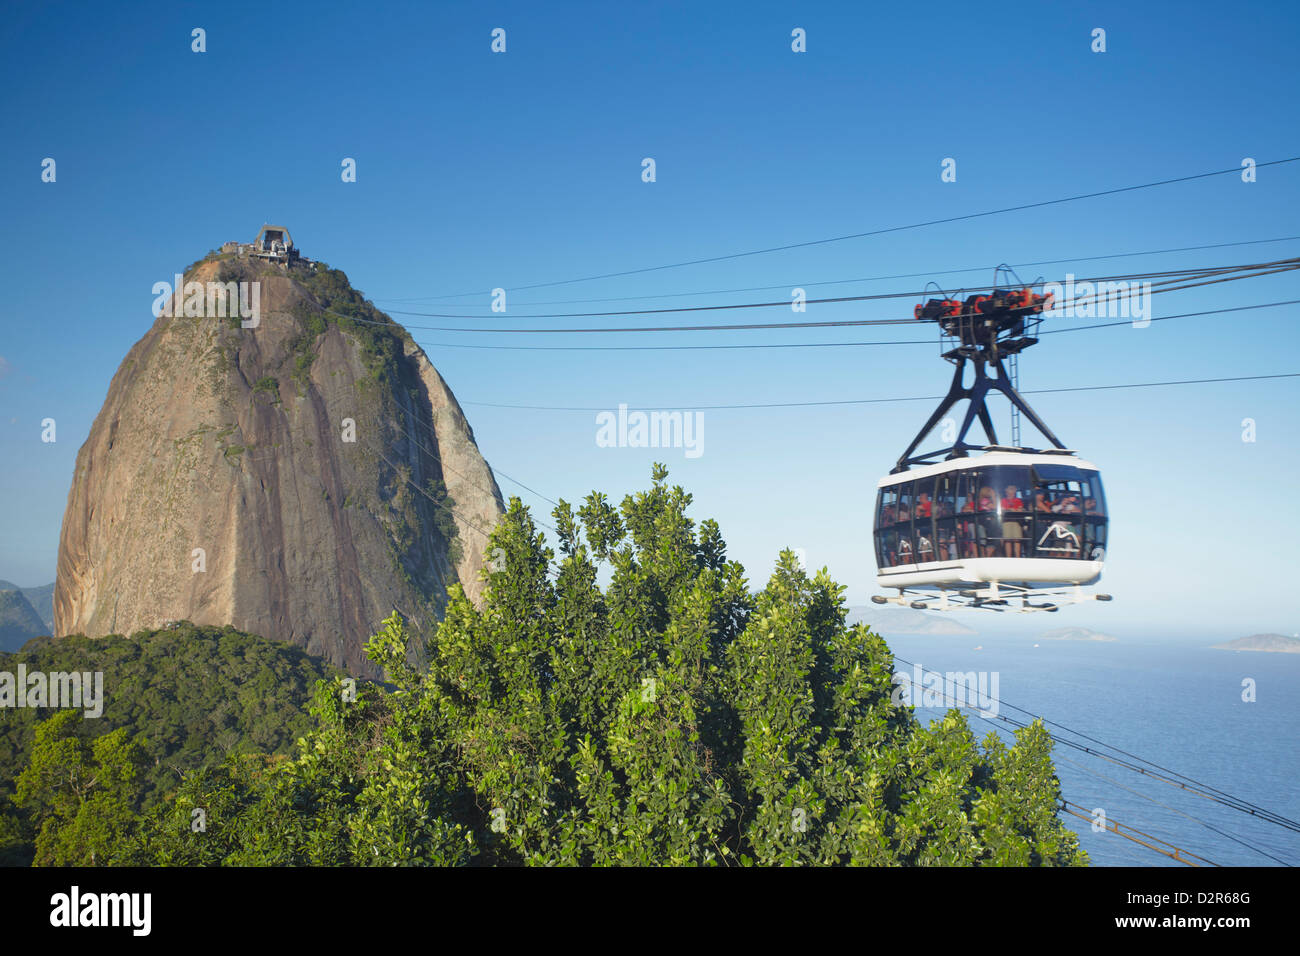 Cable car at Sugar Loaf Mountain (Pao de Acucar), Urca, Rio de Janeiro, Brazil, South America Stock Photo